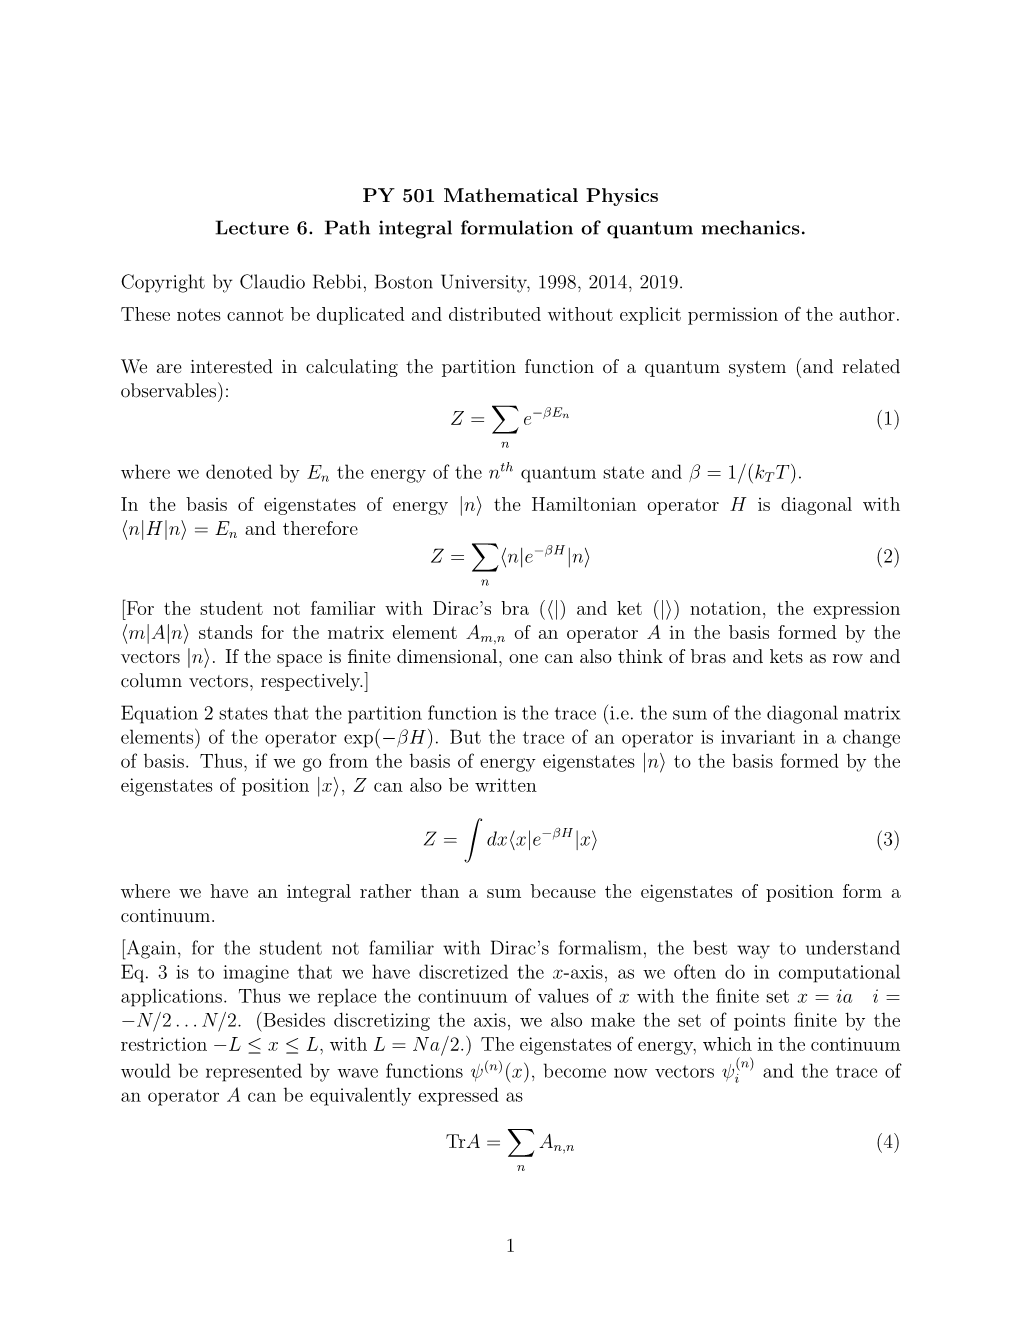 Path Integral Formulation of Quantum Mechanics